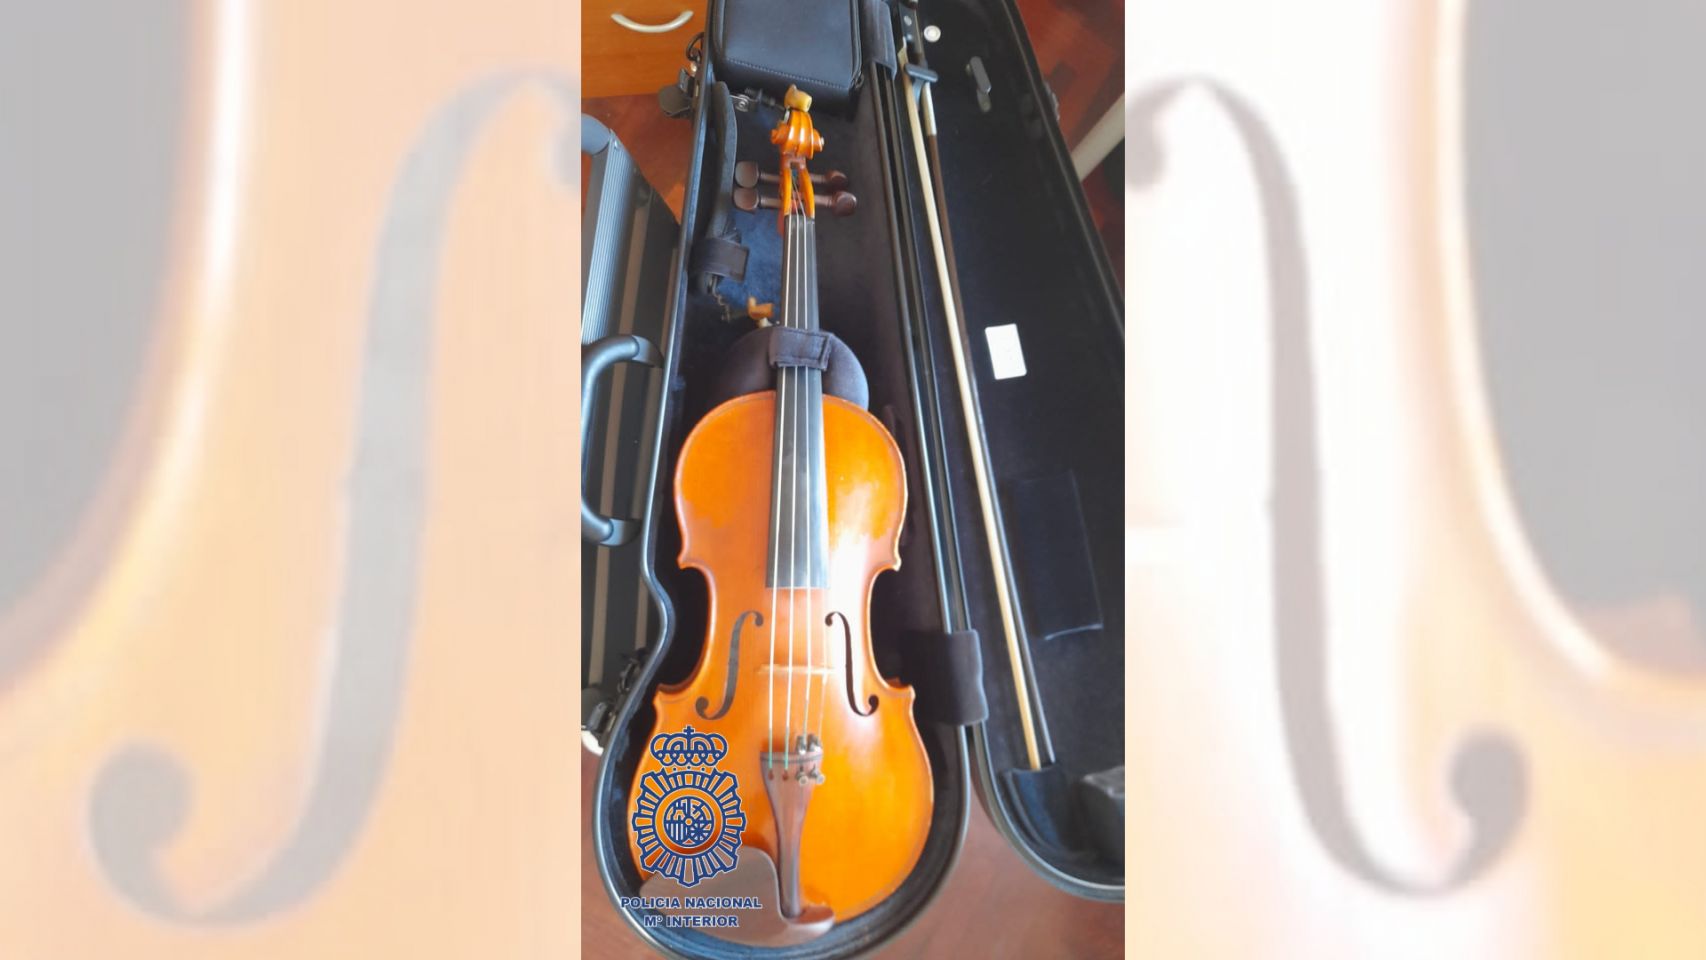 El violín valorado en 7.000 euros.